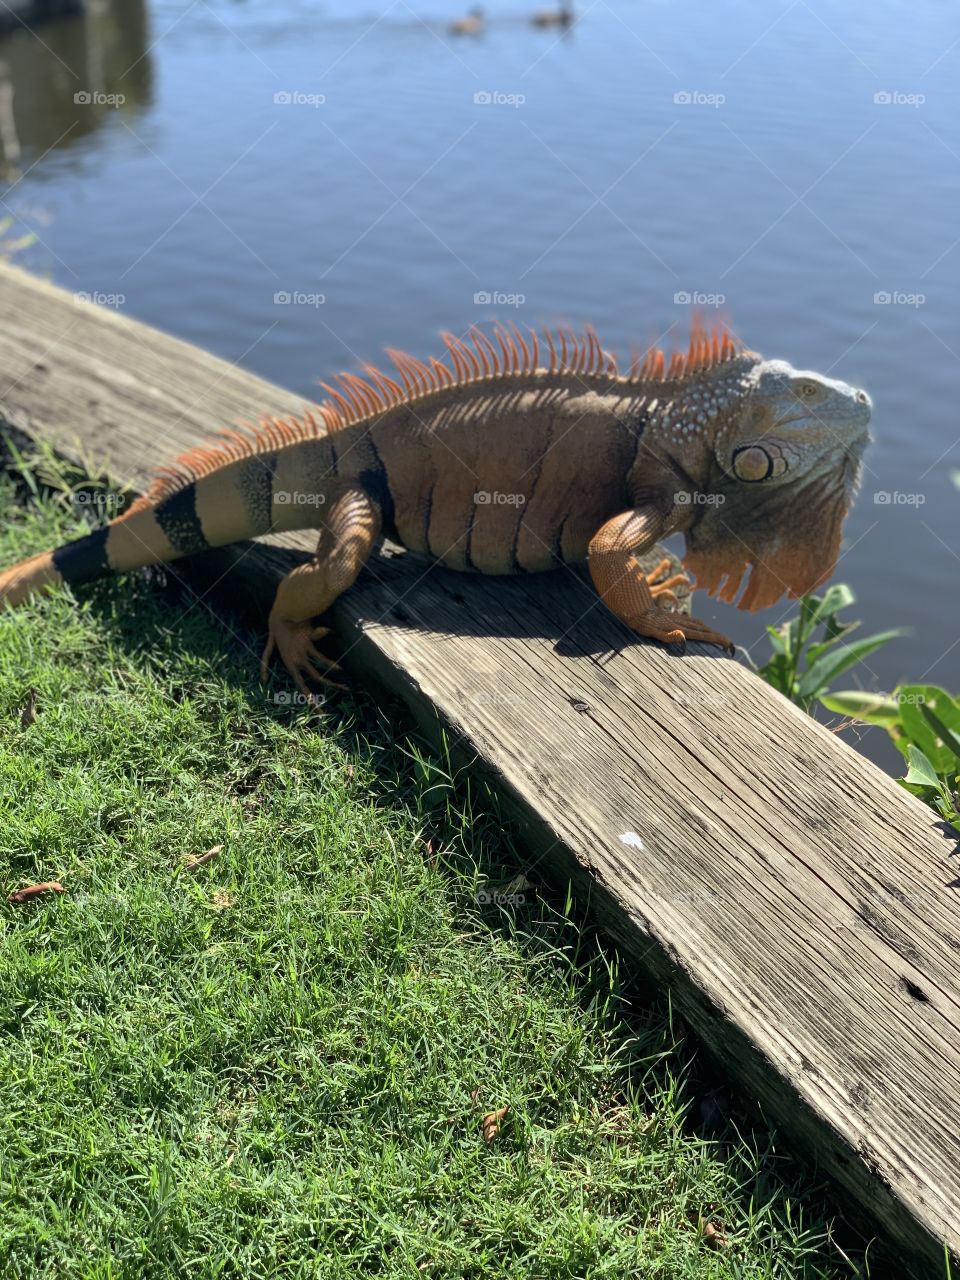 Iguana in sun at park